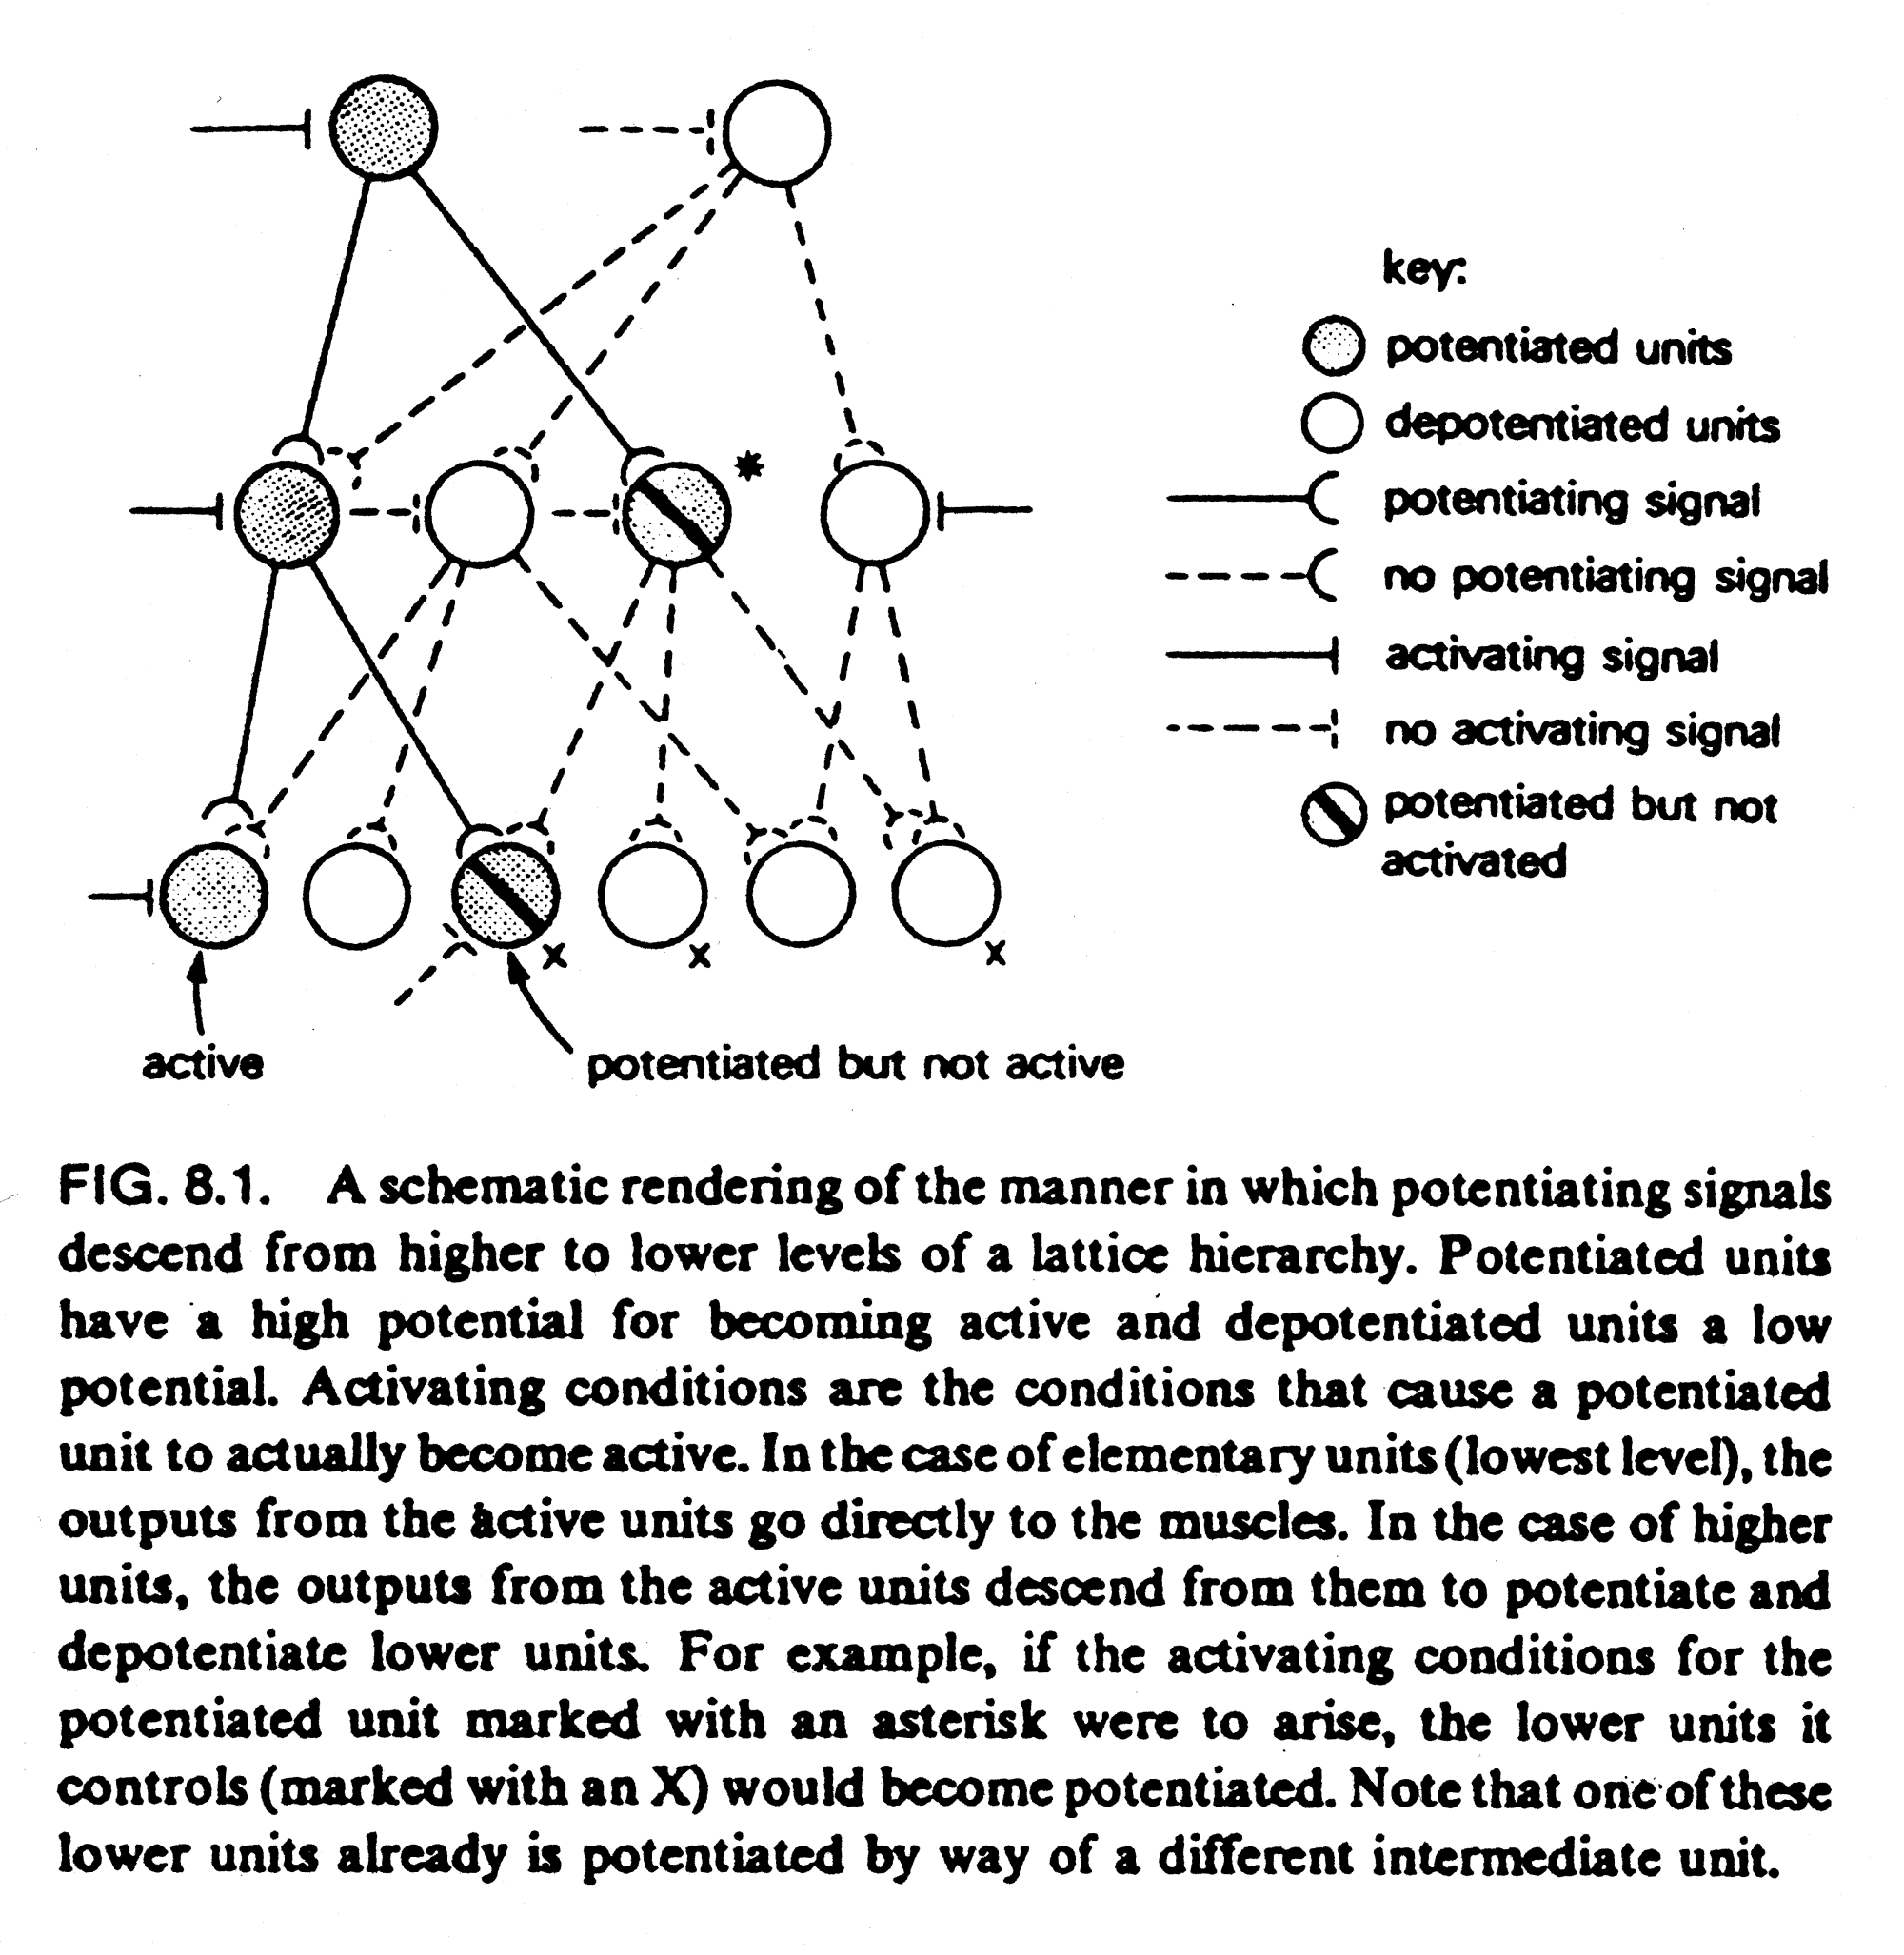 Figure 4: Skematisk fremstilling af et latticehierarki (Gallistel, 1980, side 122)